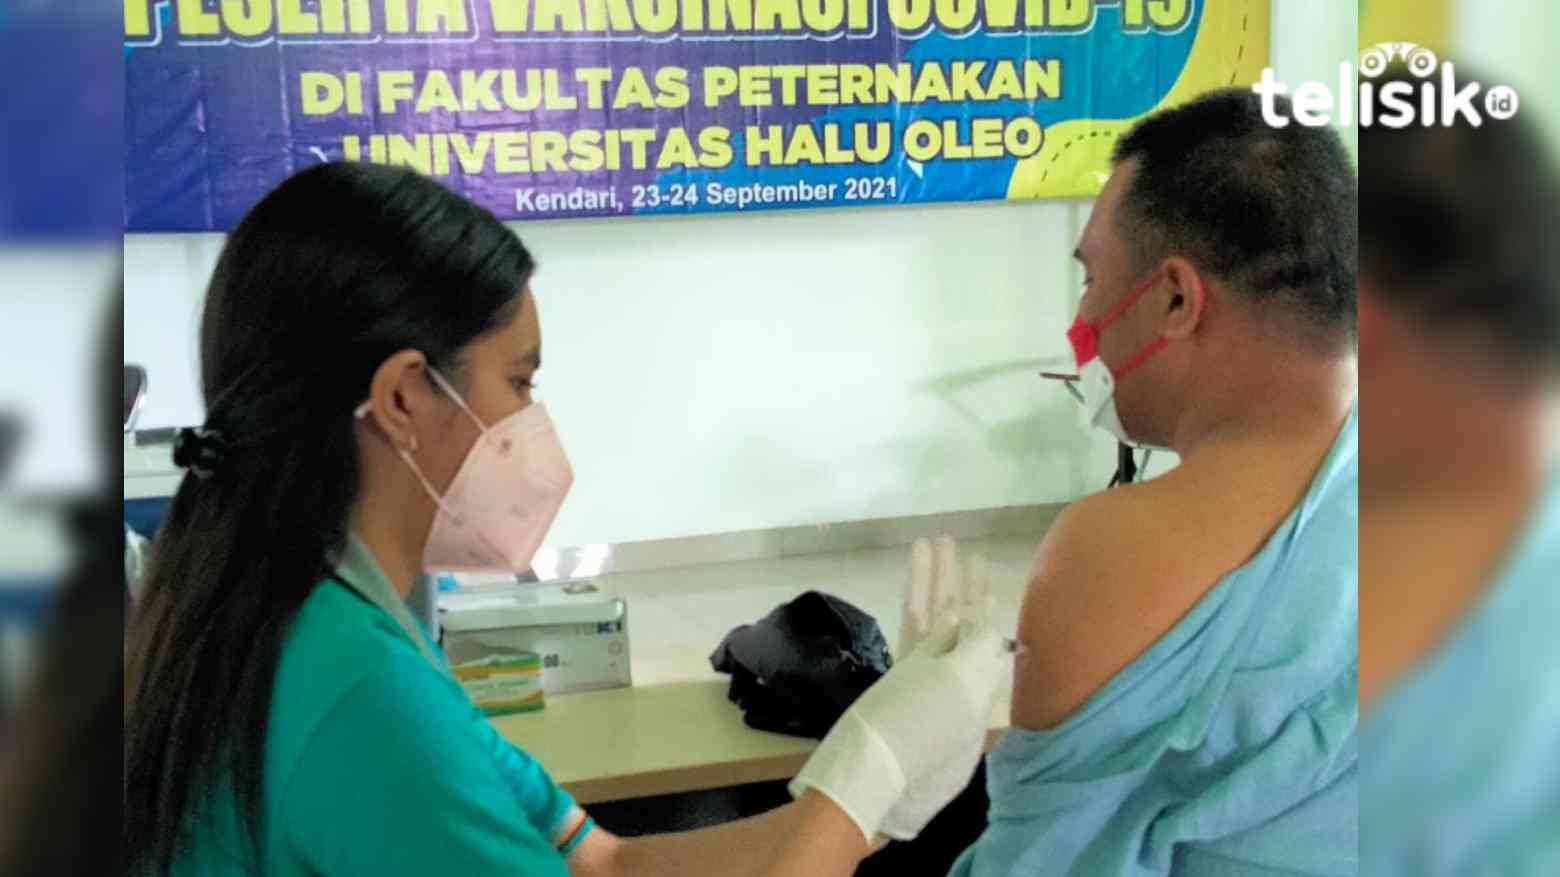 Selain Mahasiswa, Vaksinasi di Fakultas Peternakan UHO Terbuka untuk Umum